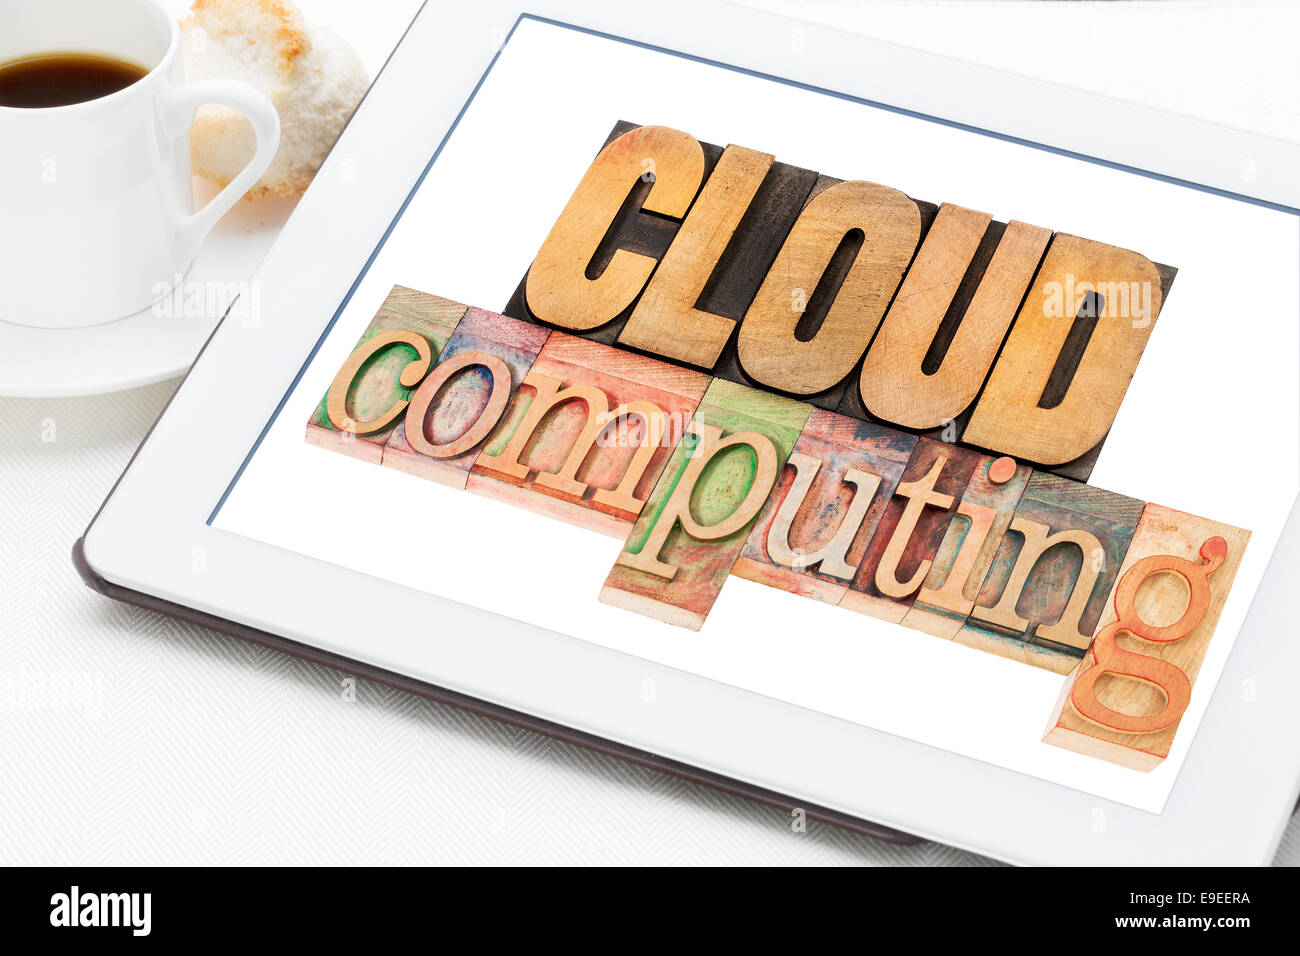 Cloud computing en tipografía de texto Tipo de madera en una tableta digital, taza de café Foto de stock